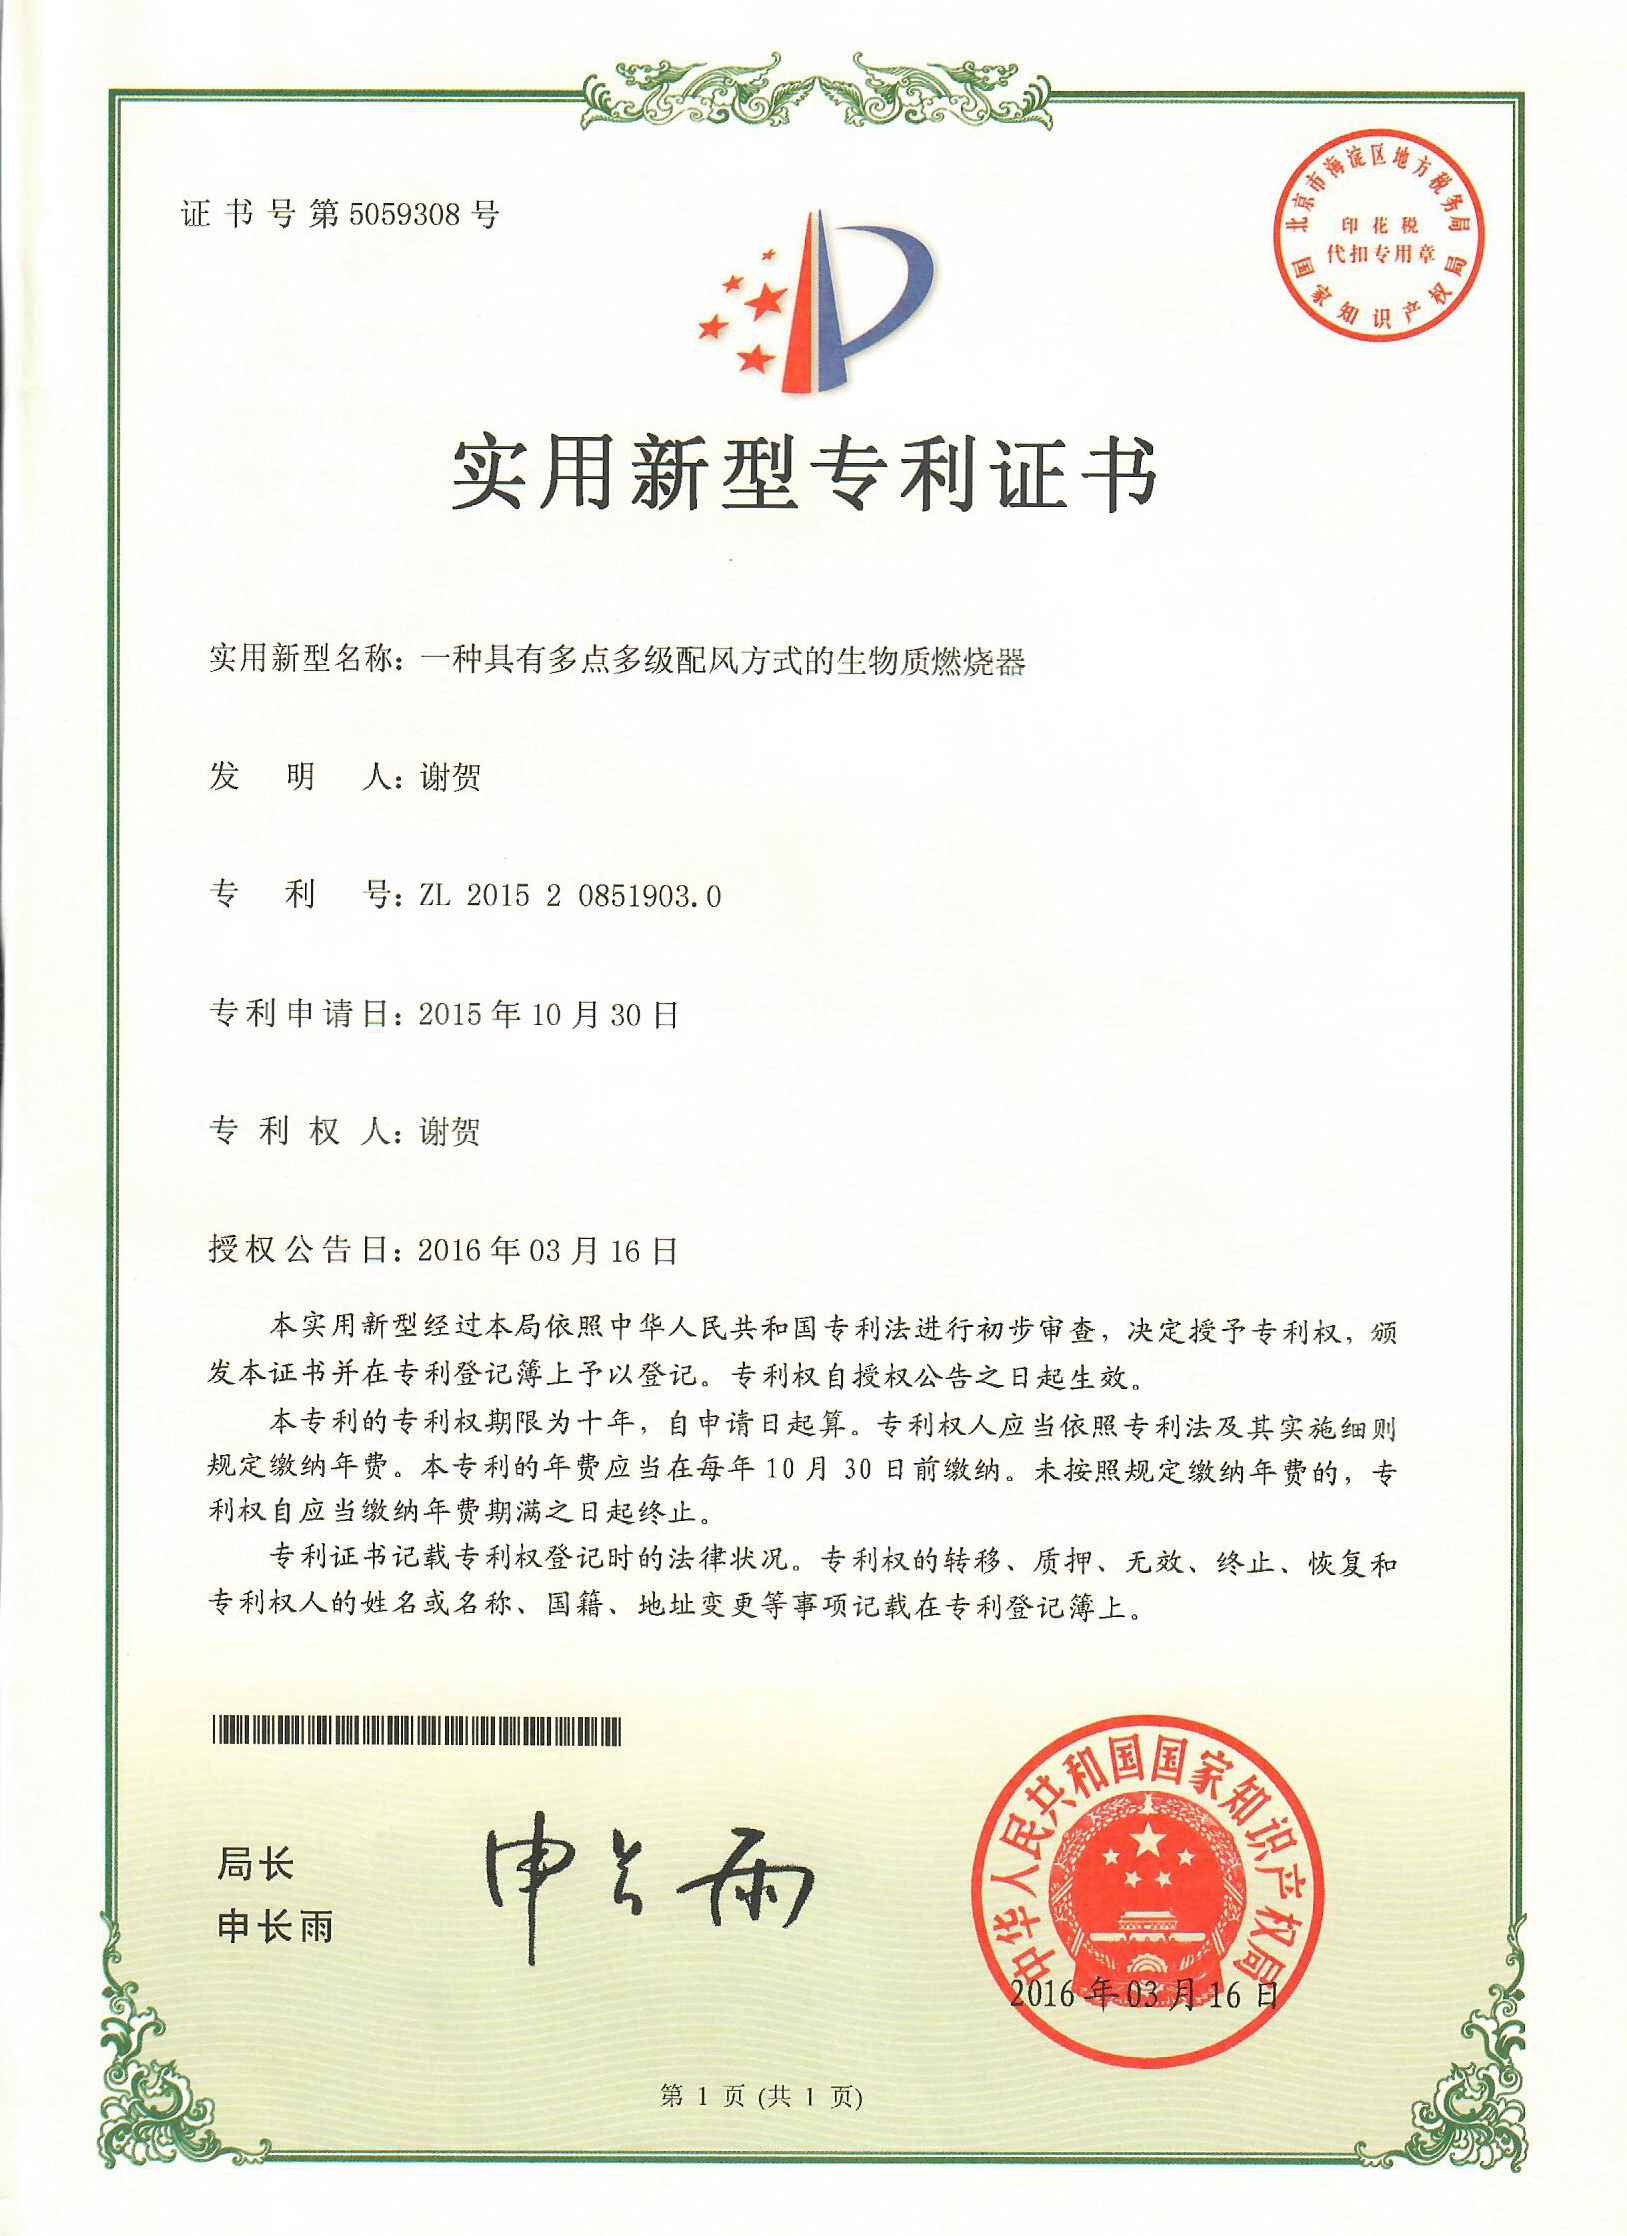 2.中華人民共和國國家知識產權局頒發的四項實用新型專利證書2_WPS圖片.jpg